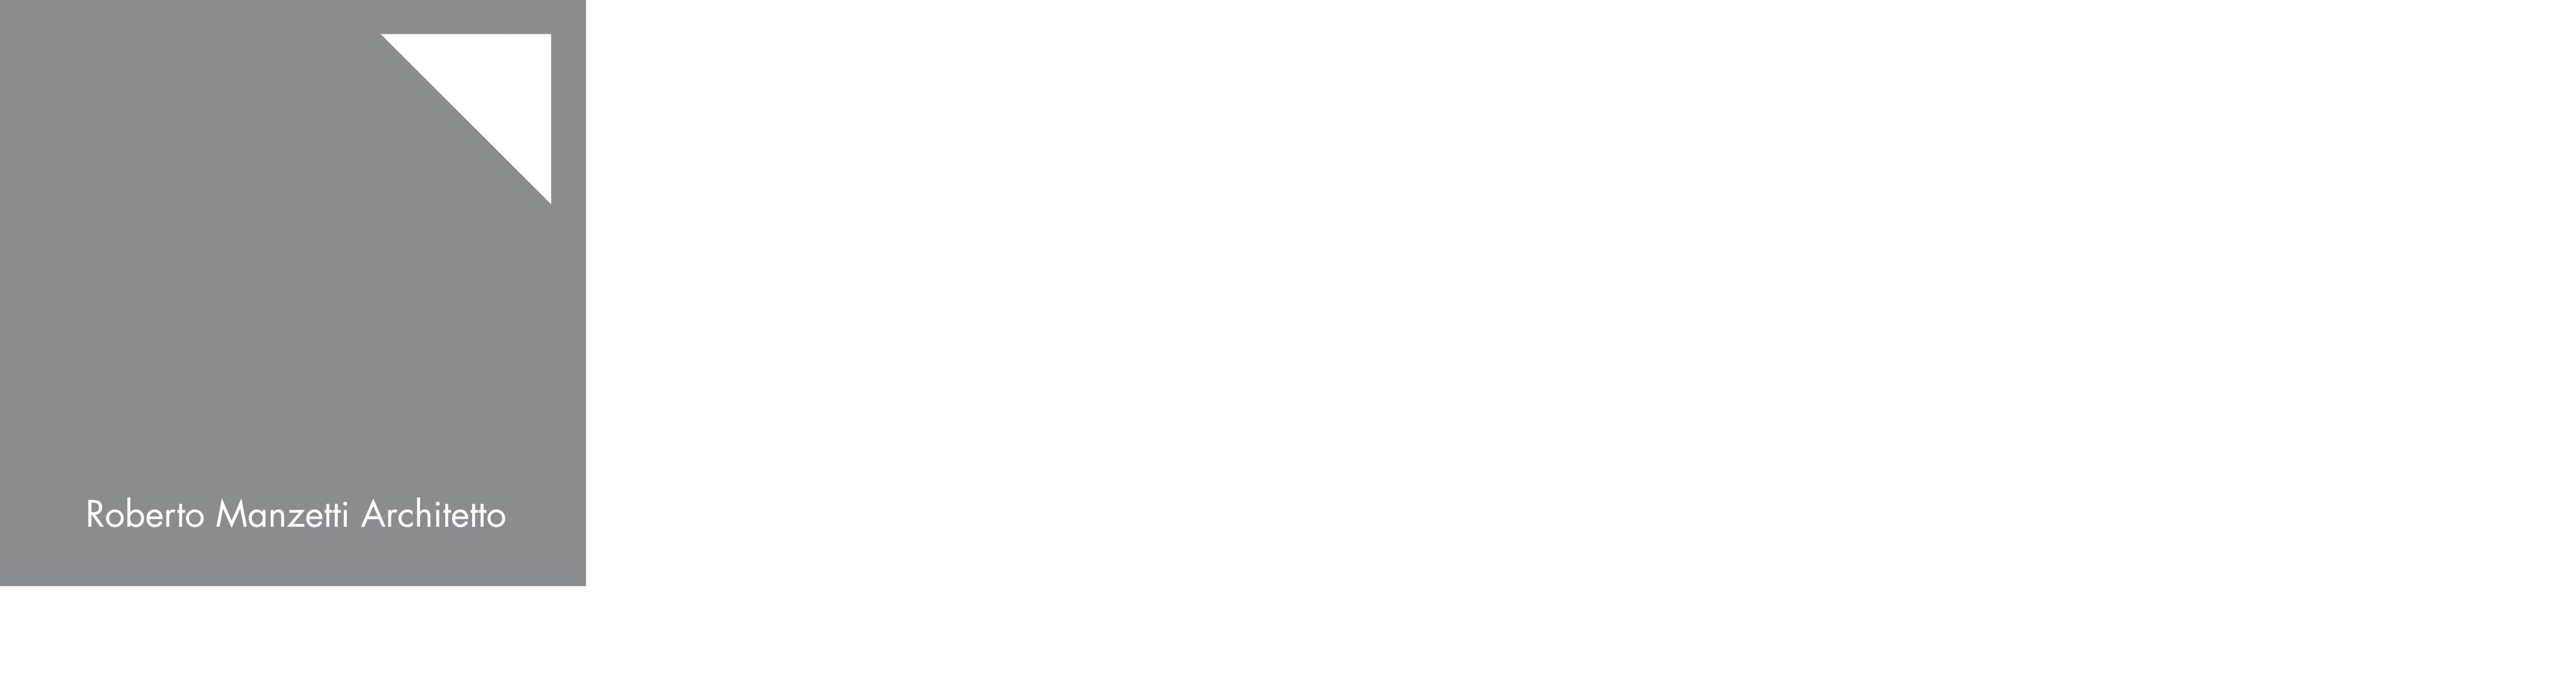 Roberto Manzetti Architetto 